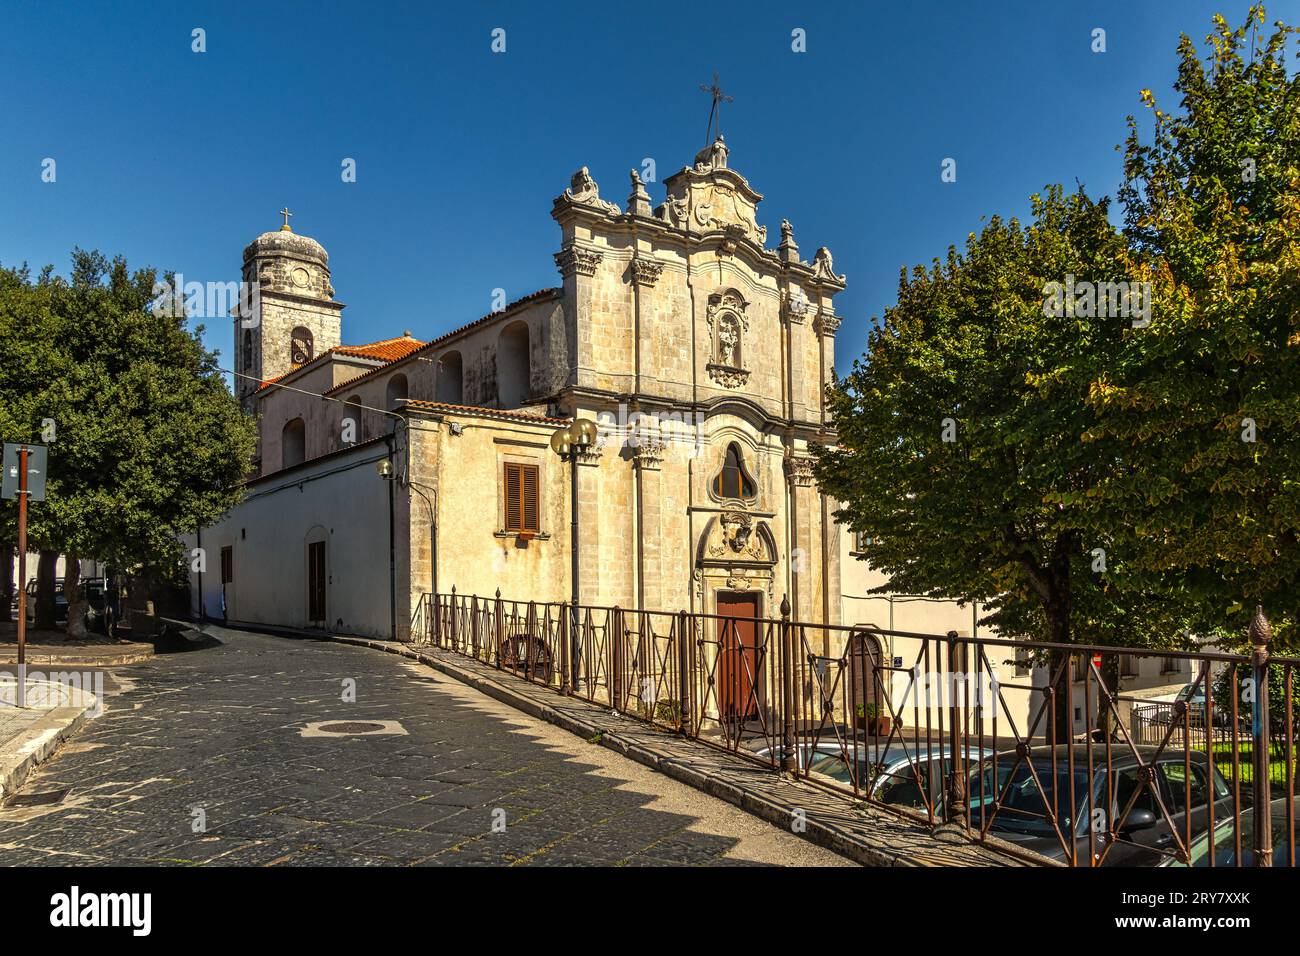 La facciata della settecentesca chiesa dedicata a Santa Maria del Carmine a Monte Sant'Angelo. Monte Sant'Angelo, provincia di Foggia, Italia Foto Stock